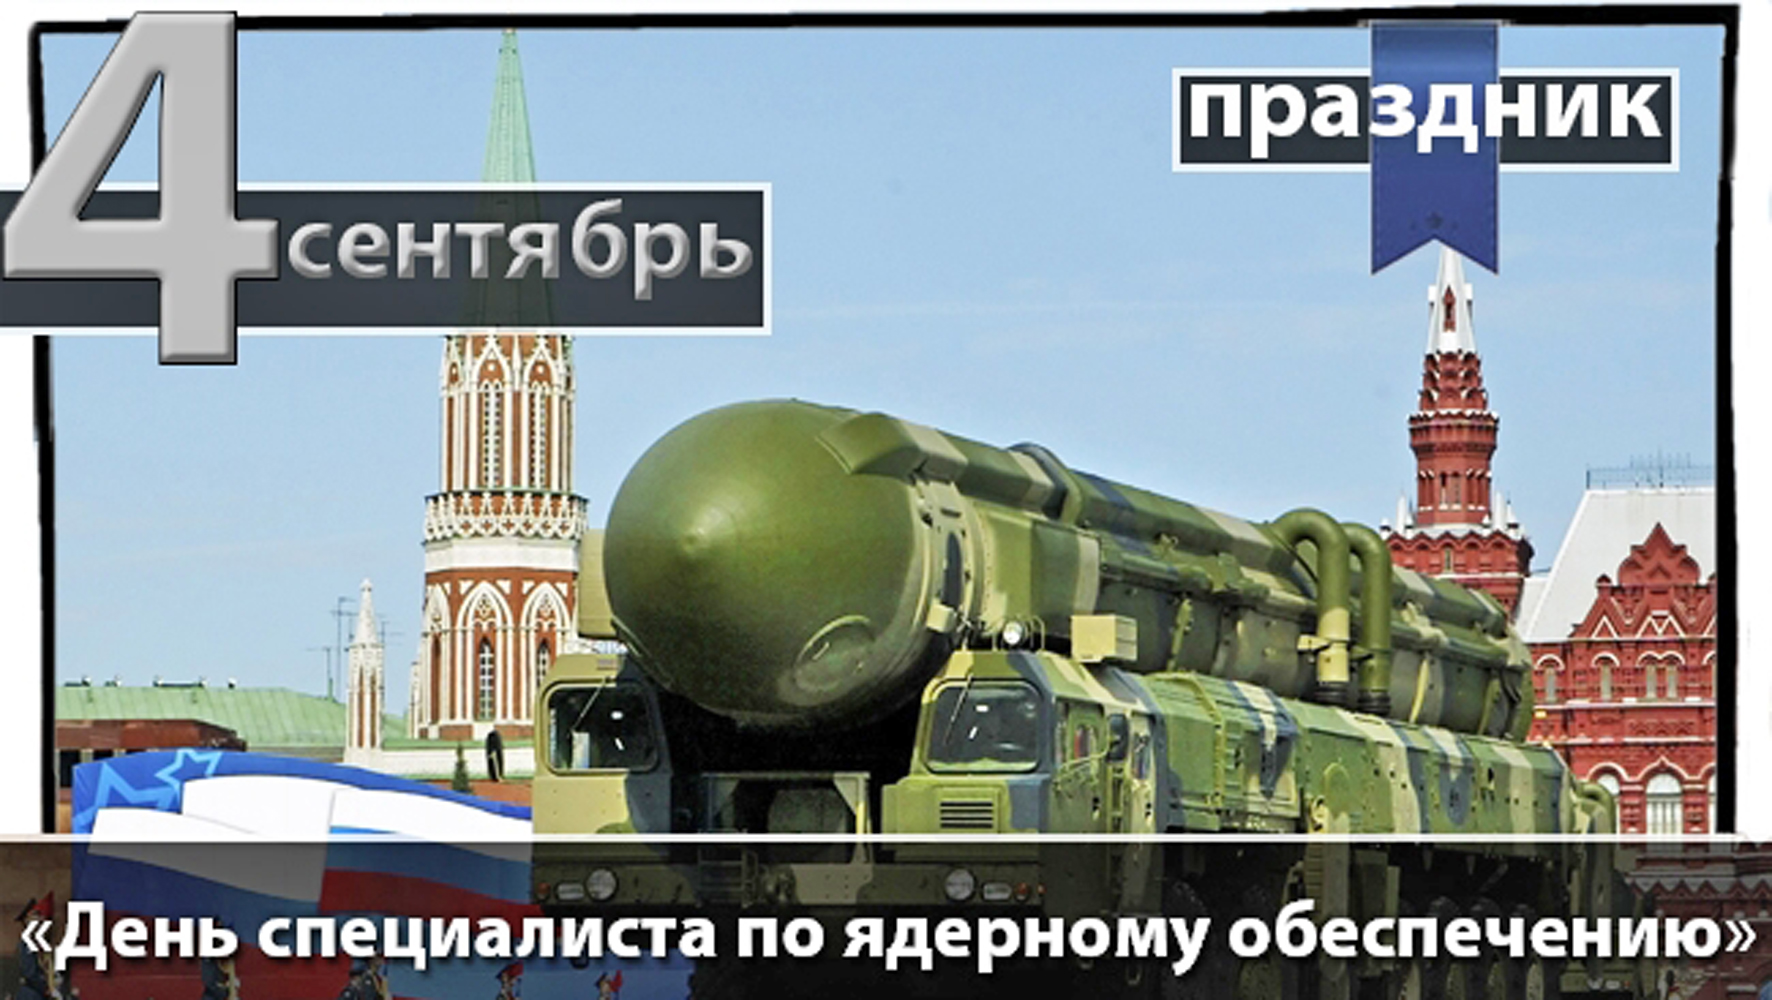 Сегодня отмечается День специалиста по ядерному обеспечению России